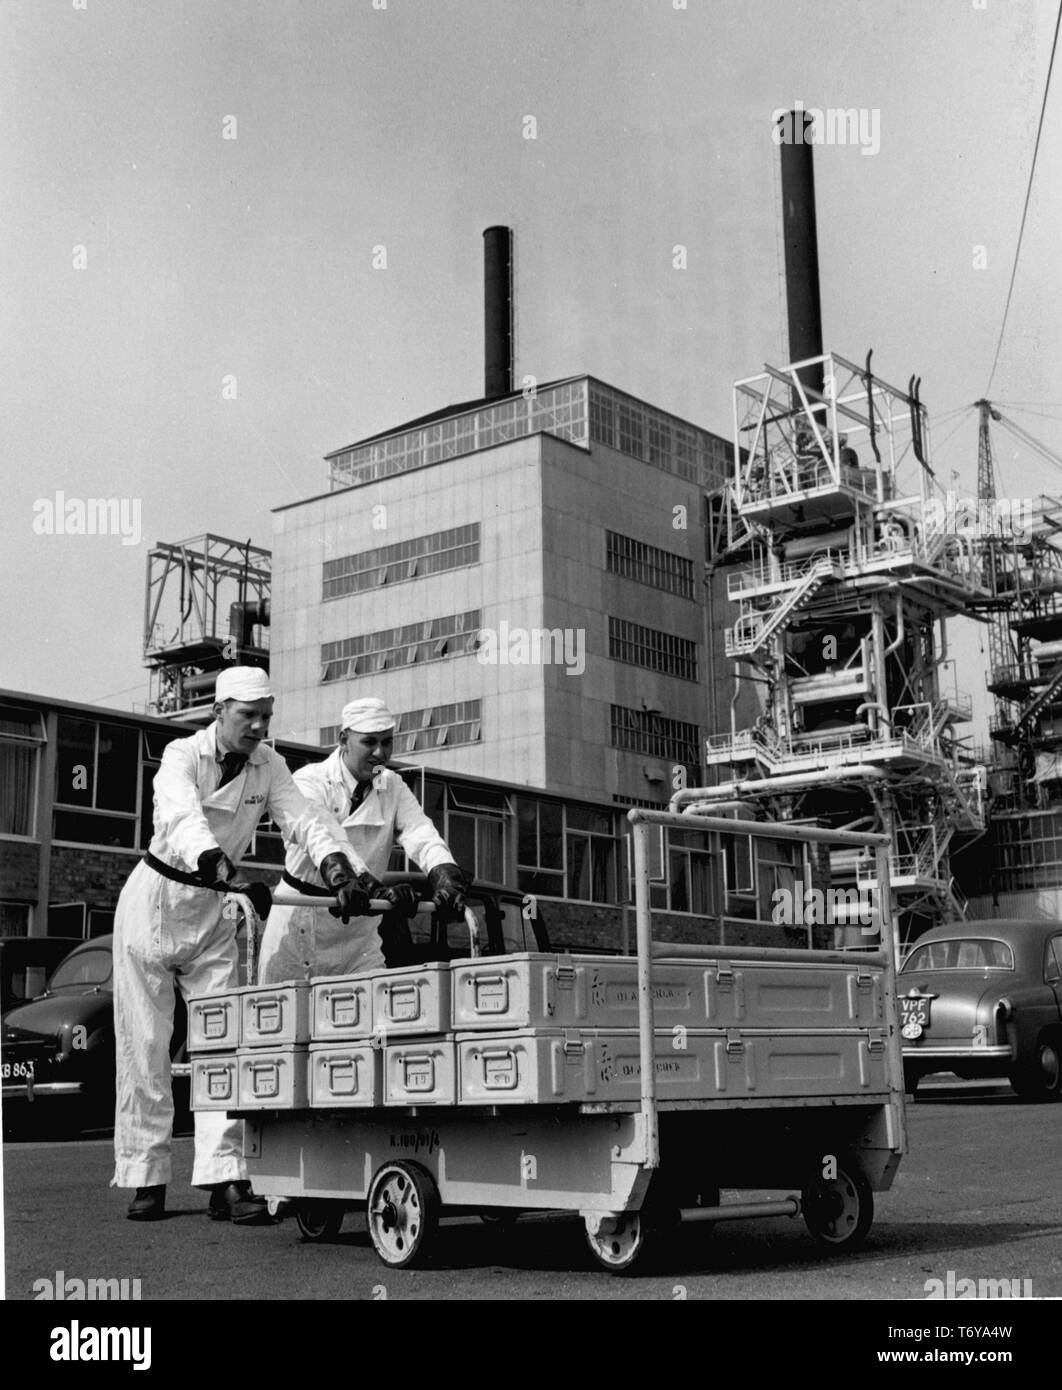 Ángulo de visión baja de dos trabajadores empujando cajas de elementos de combustible sobre una plataforma rodante, con el reactor número 2 en el fondo, Calder Hall, la central nuclear de Sellafield, Reino Unido, 1956. Imagen cortesía del Departamento de Energía de Estados Unidos. () Foto de stock